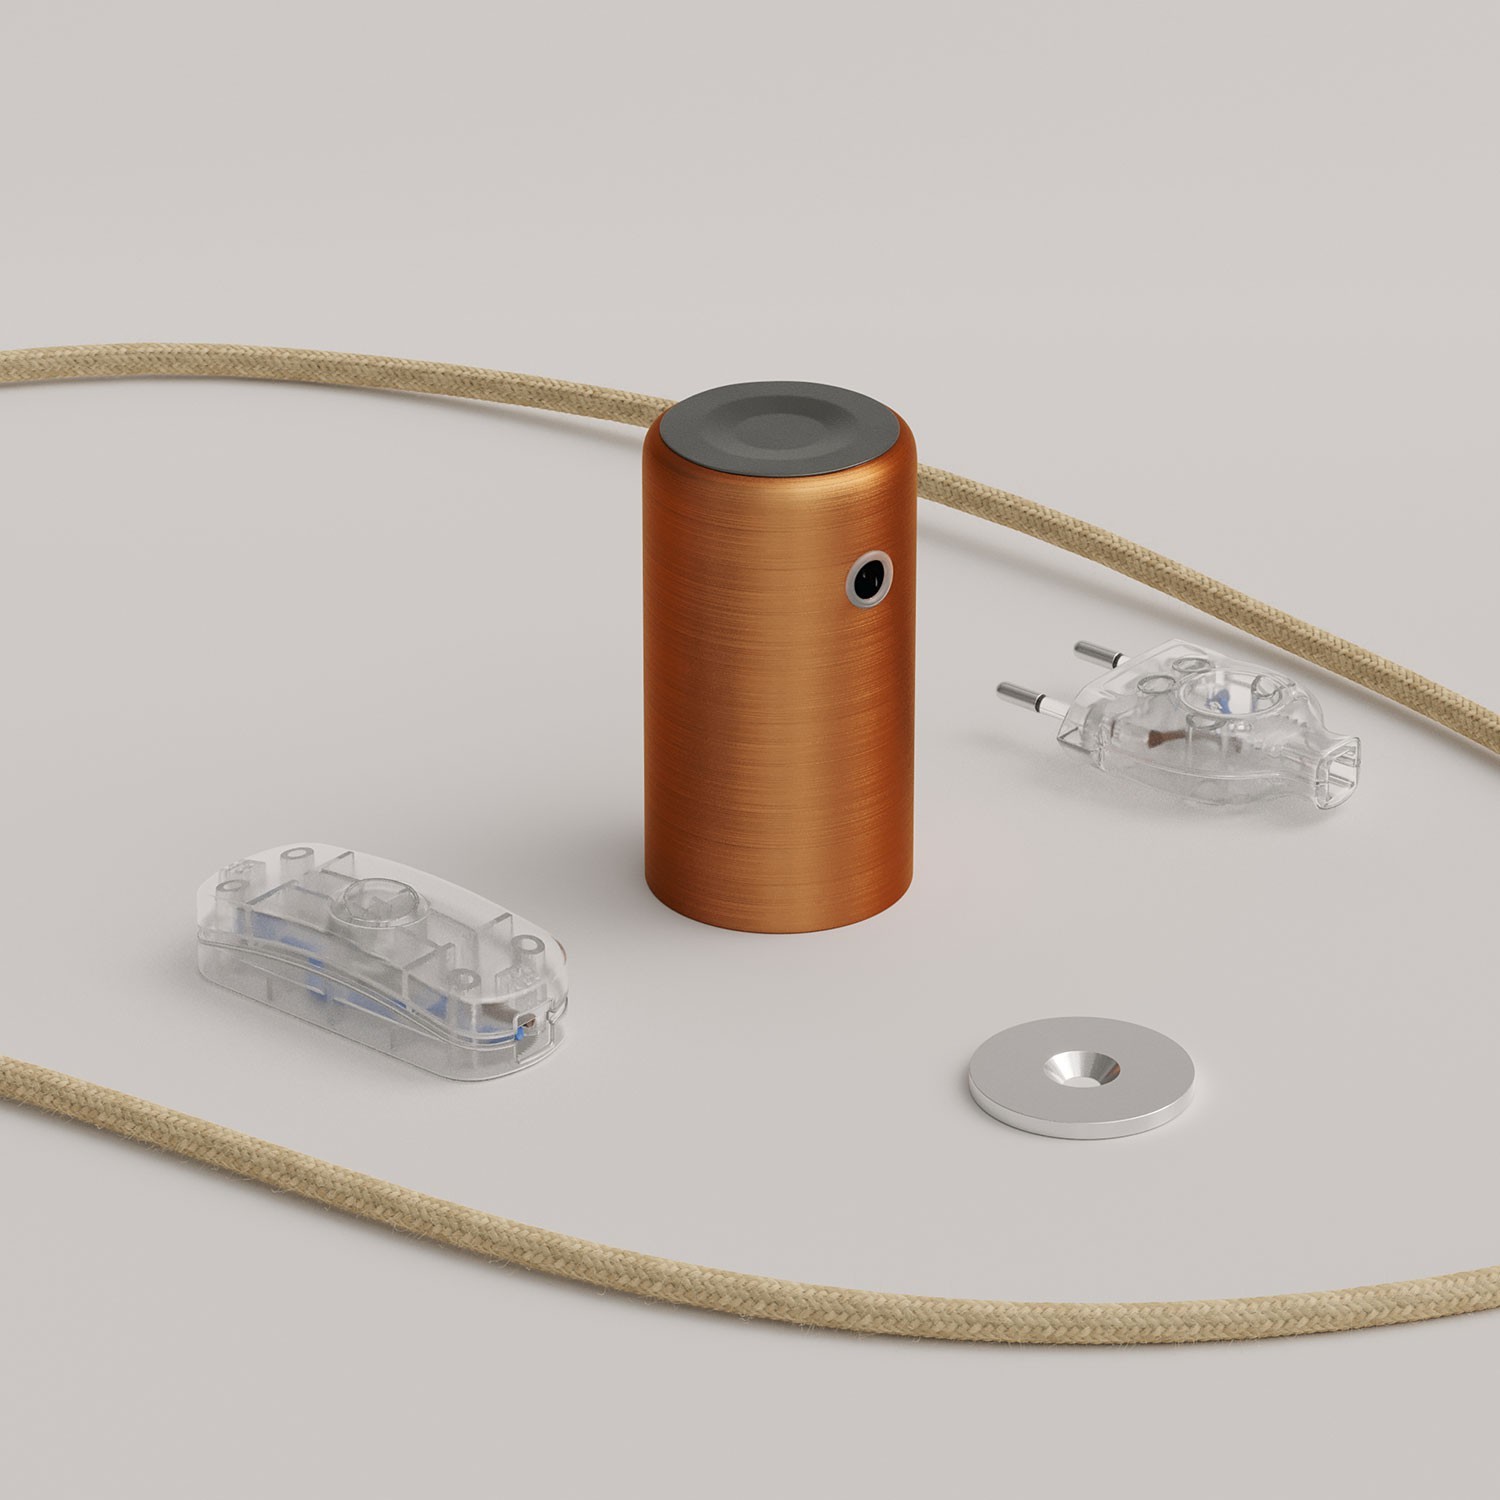 Magnetico®-Plug Elegant, magnetno svetilo pripravljeno za uporabo